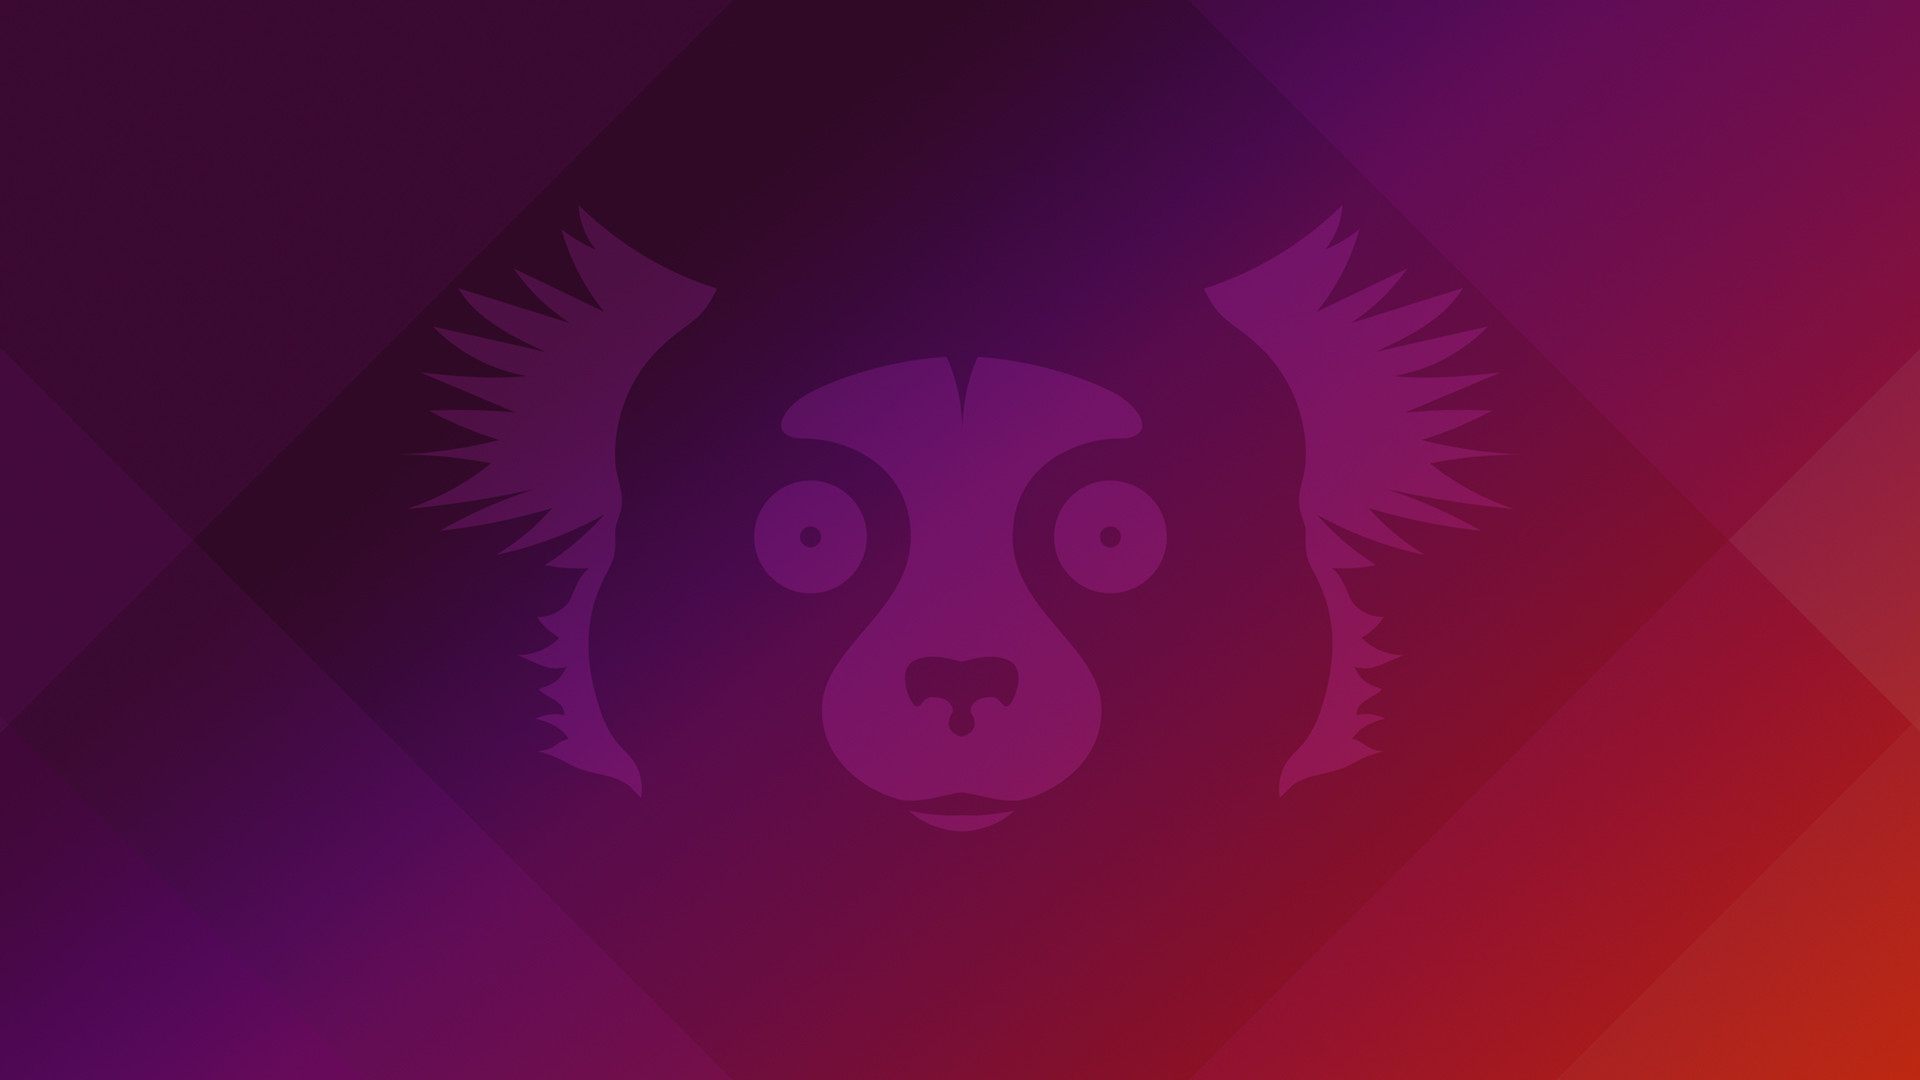 Ubuntu 21.10 Impish Indri default wallpaper